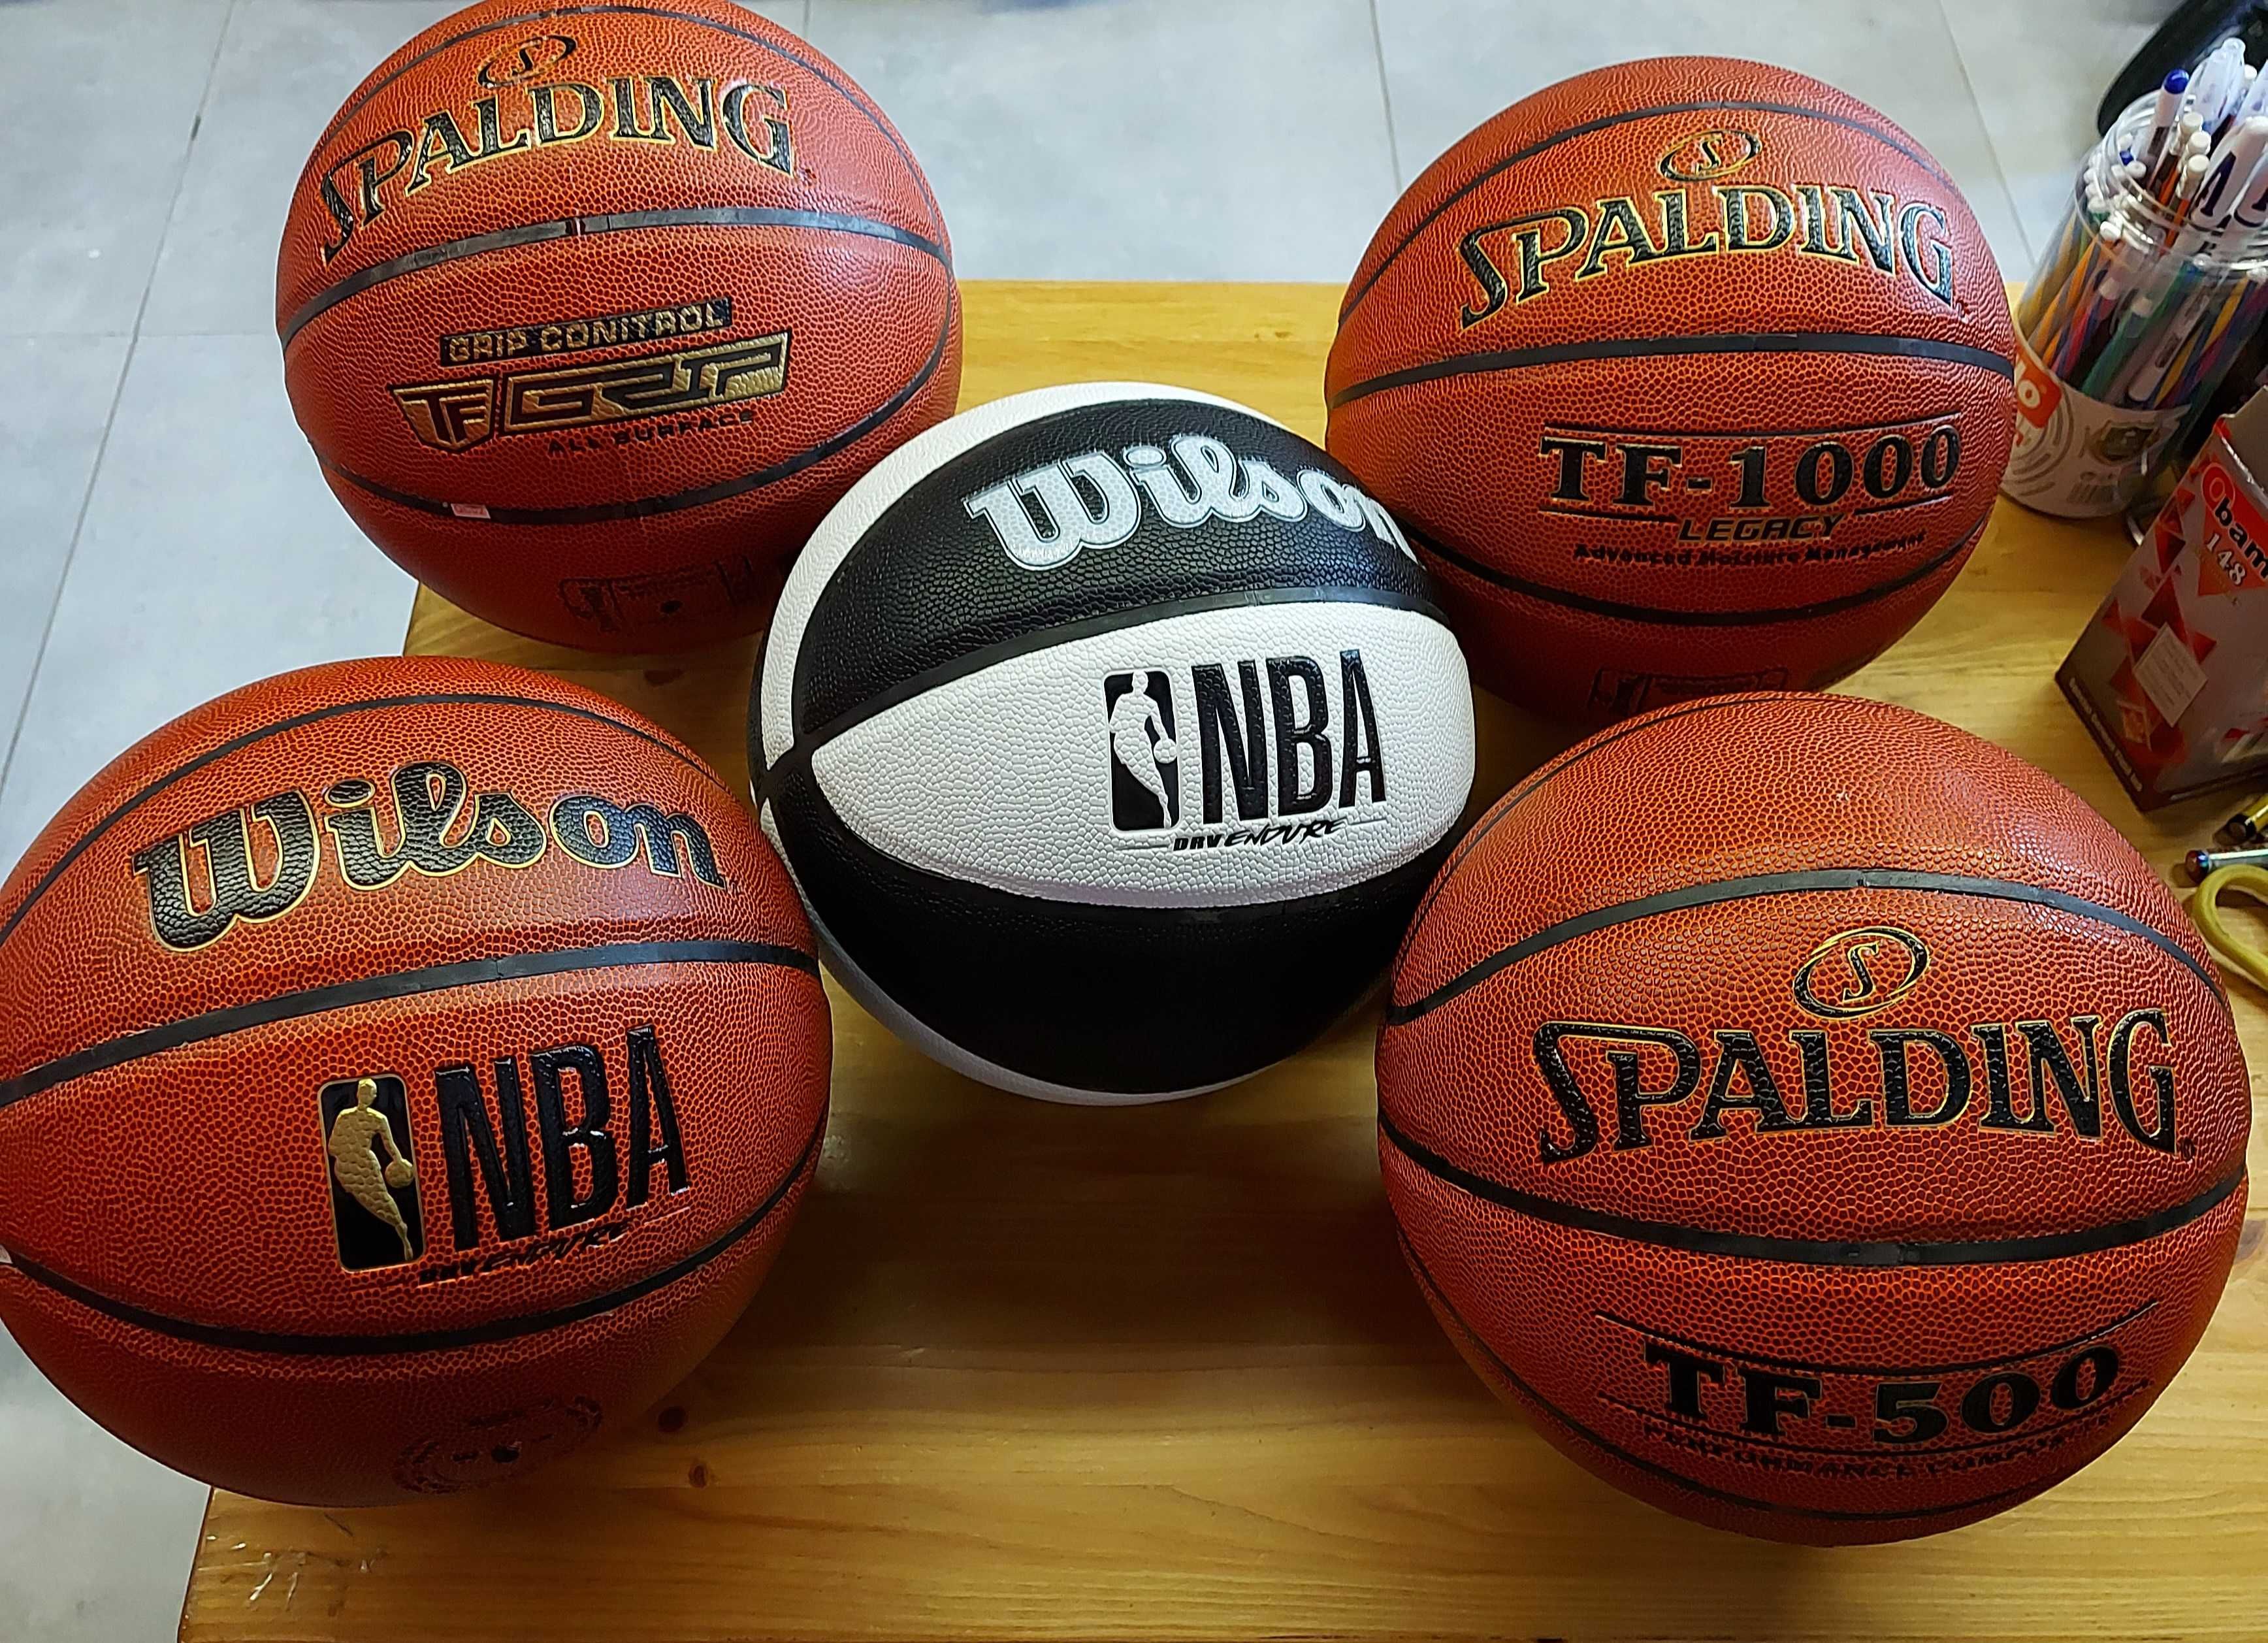 Баскетбольный мяч Molten, Spalding, Wilson, Sports. Мячи 7-ка и 6-ка.